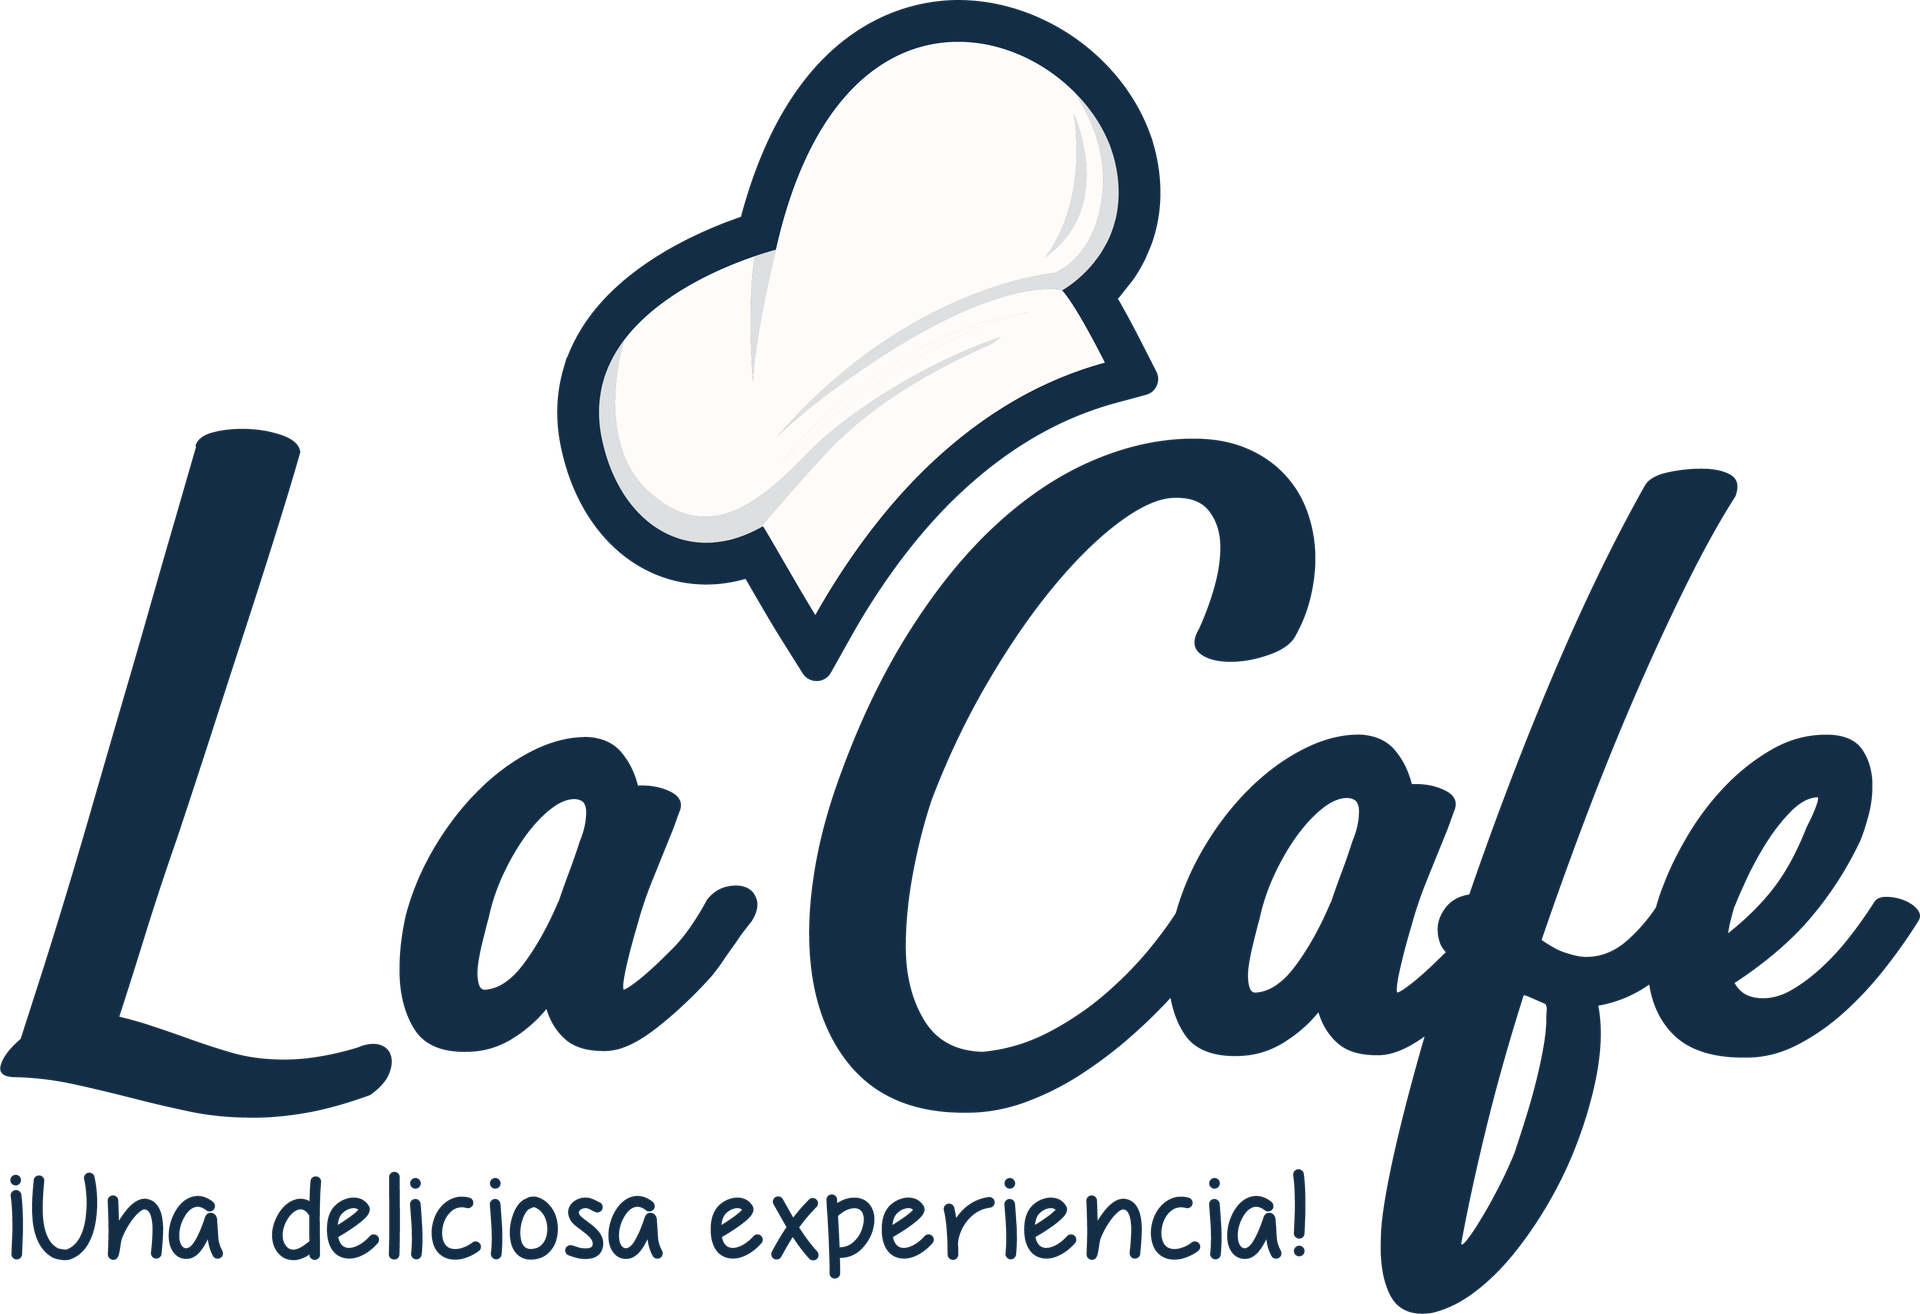 La Cafe Lehnsen